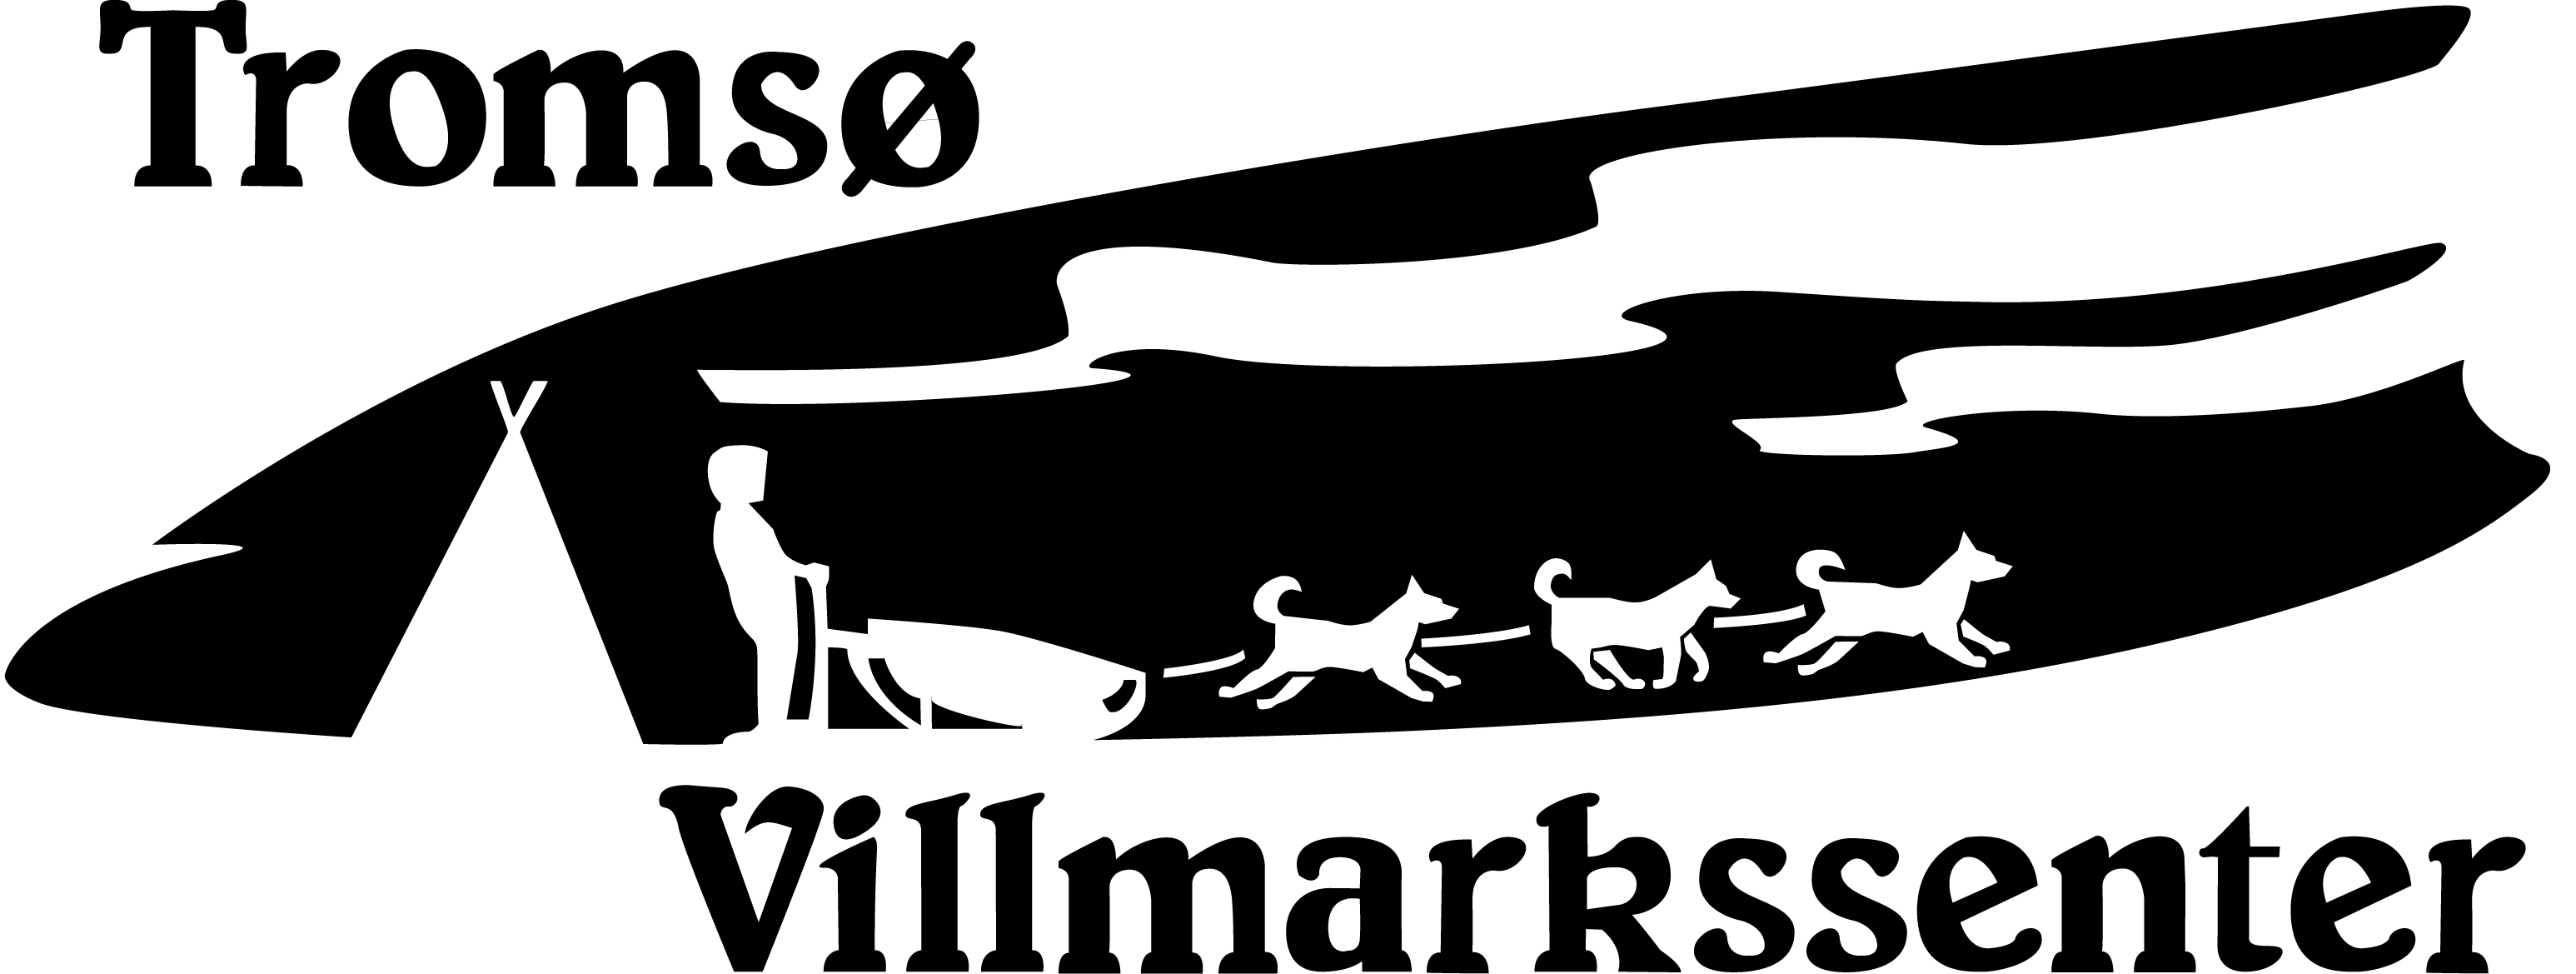 Tromsø Villmarkssenter header logo